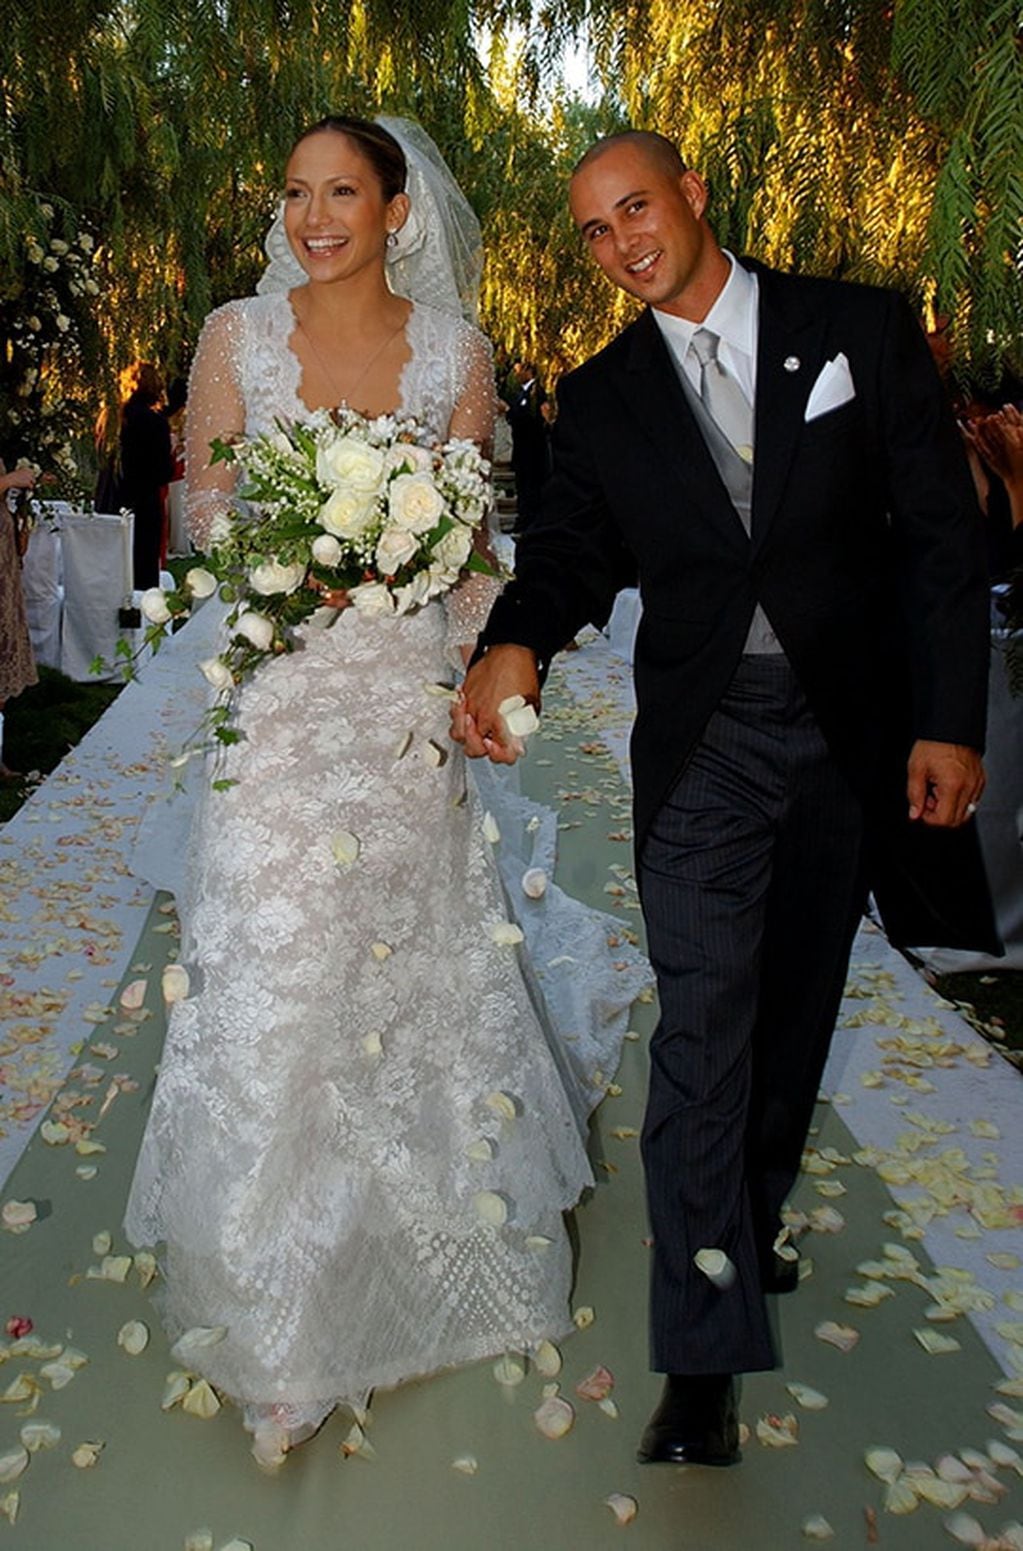 En 2001, Jennifer se volvió a casar al coreógrafo Cris Judd en una boda íntima en su mansión de Santa Mónica